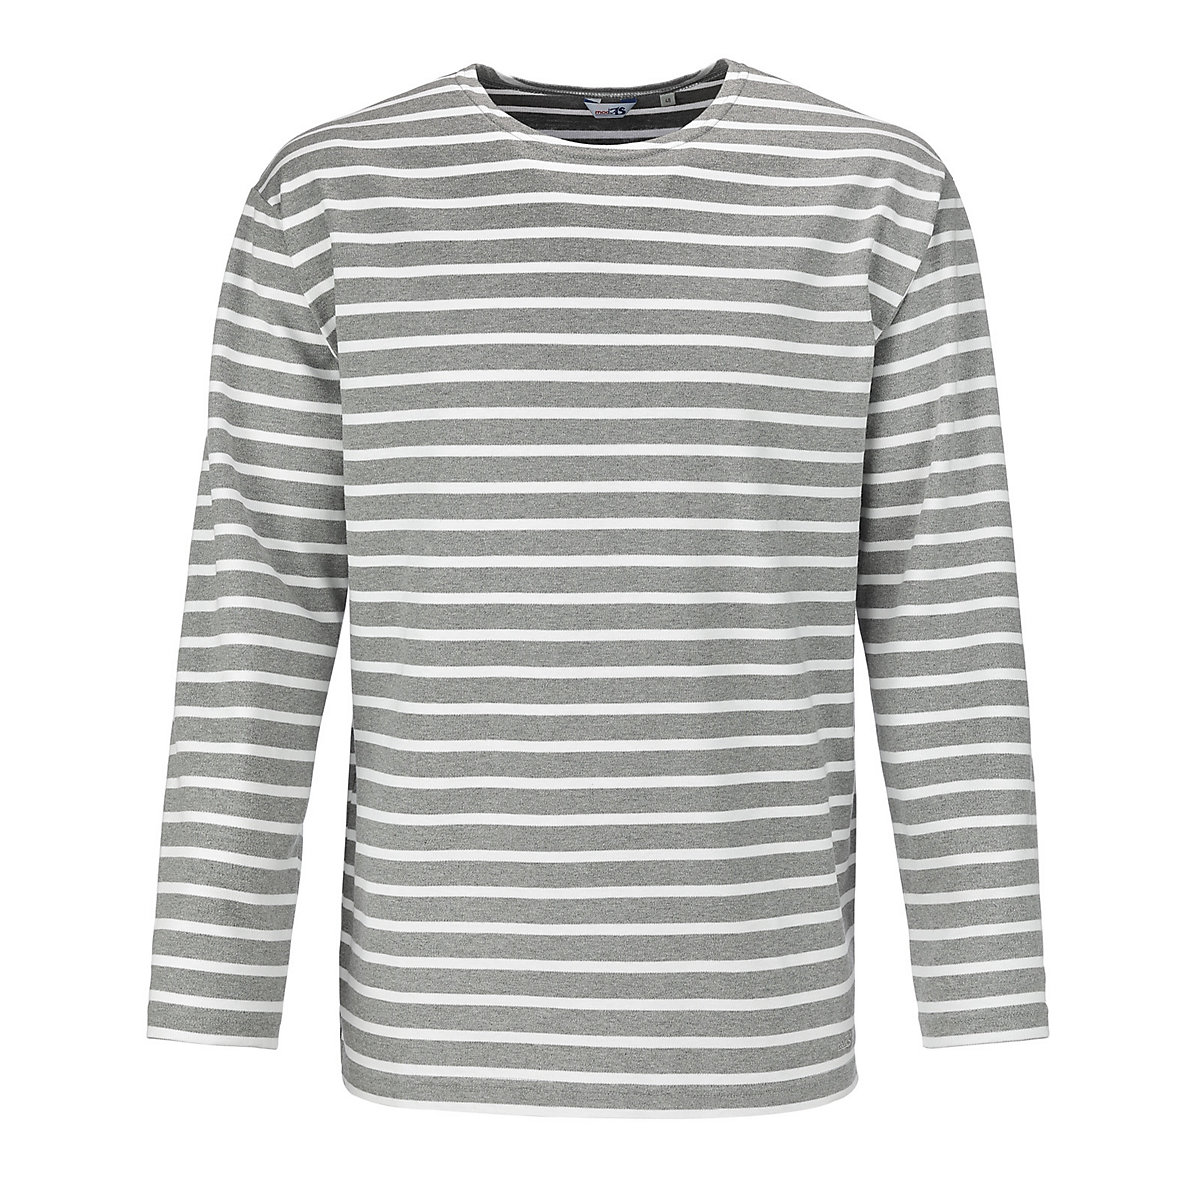 modAS Bretonisches Shirt mit Streifen Gestreiftes Langarm-Shirt Rundhalsausschnitt (91) grau-melange / weiß grau/weiß